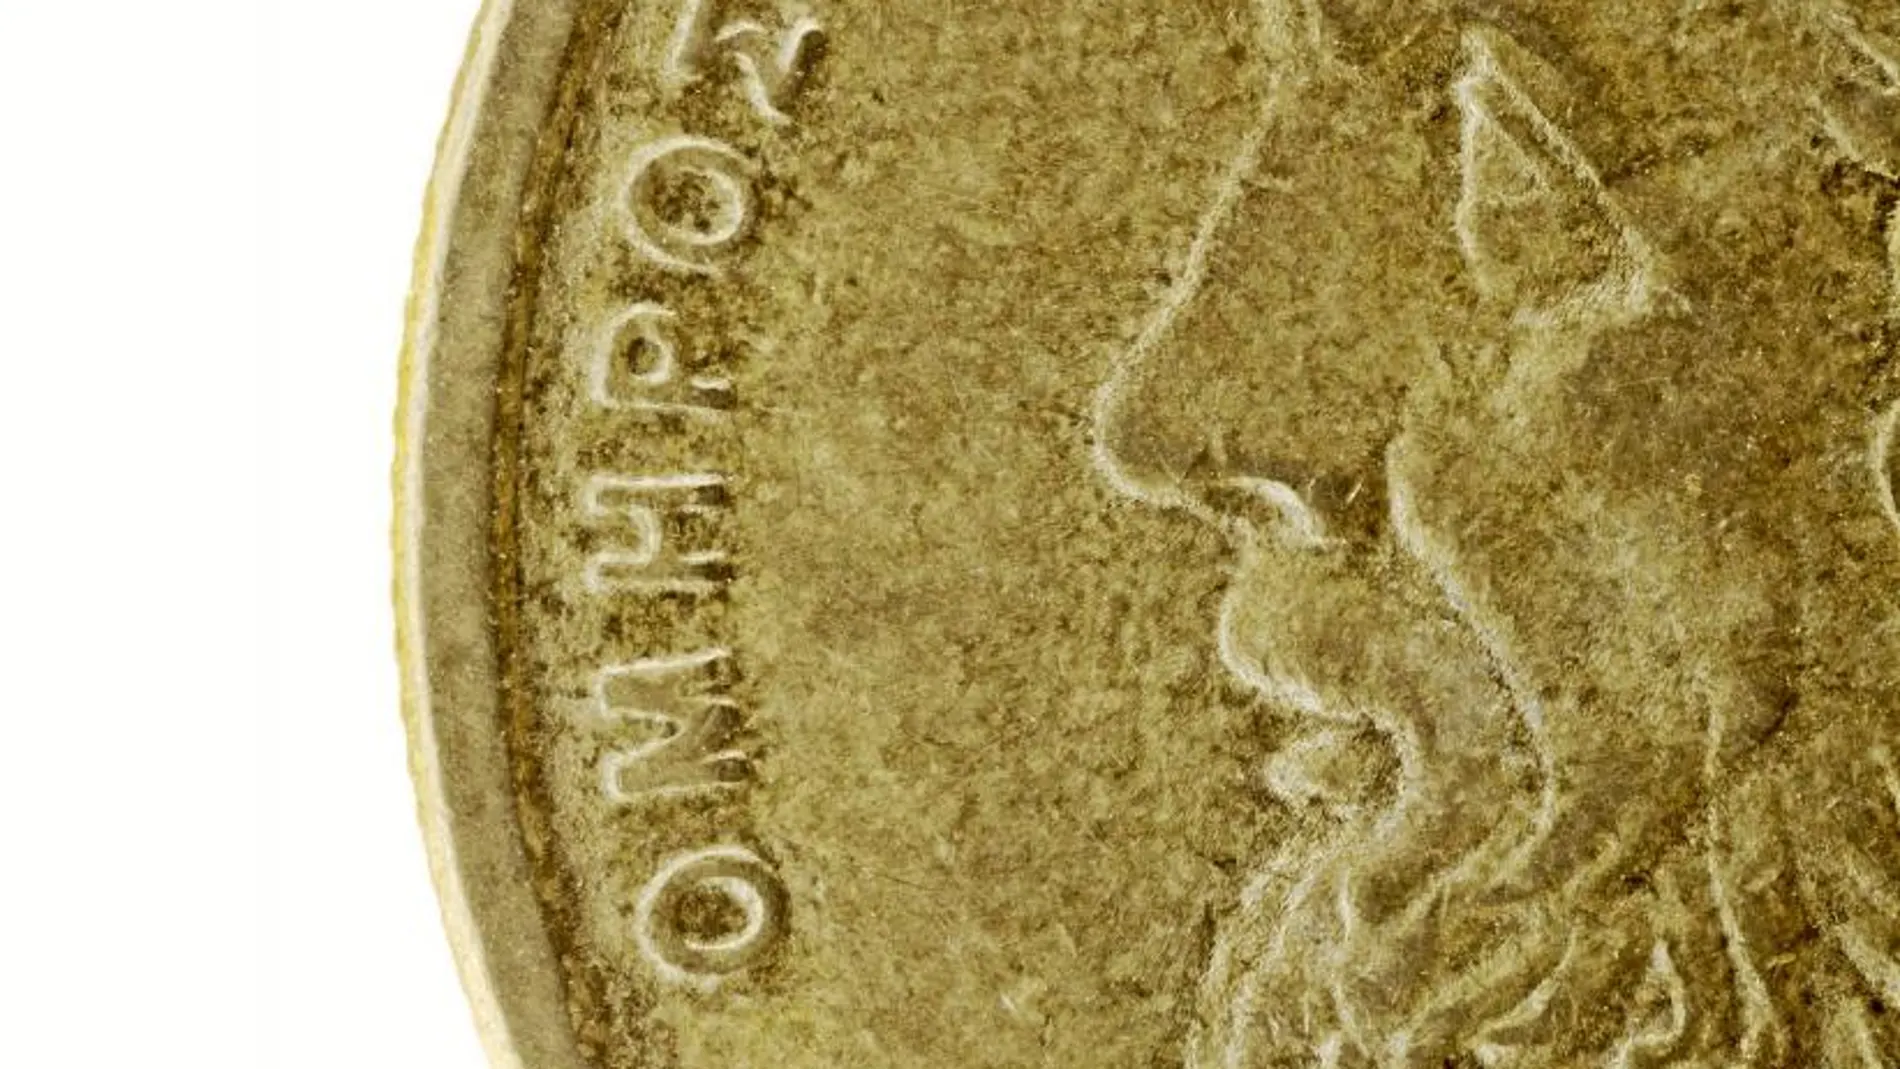 La efigie de Homero, que sigue siendo un misterio, en una moneda de 50 dracmas griegos